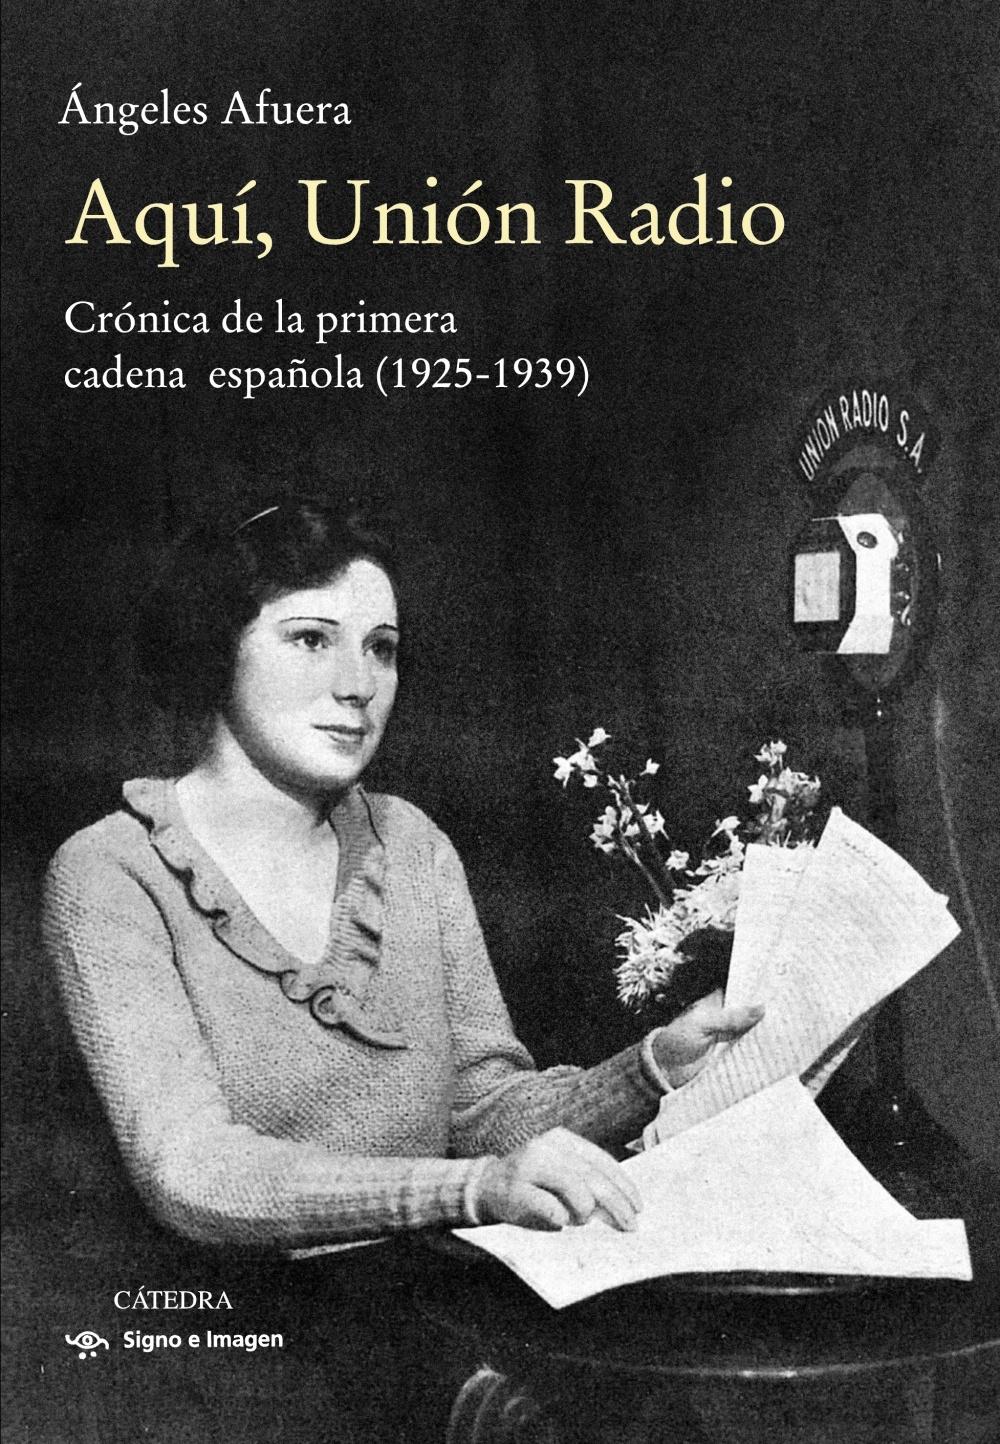 Aquí, Unión Radio "Crónica de la primera cadena española (1925-1939)"